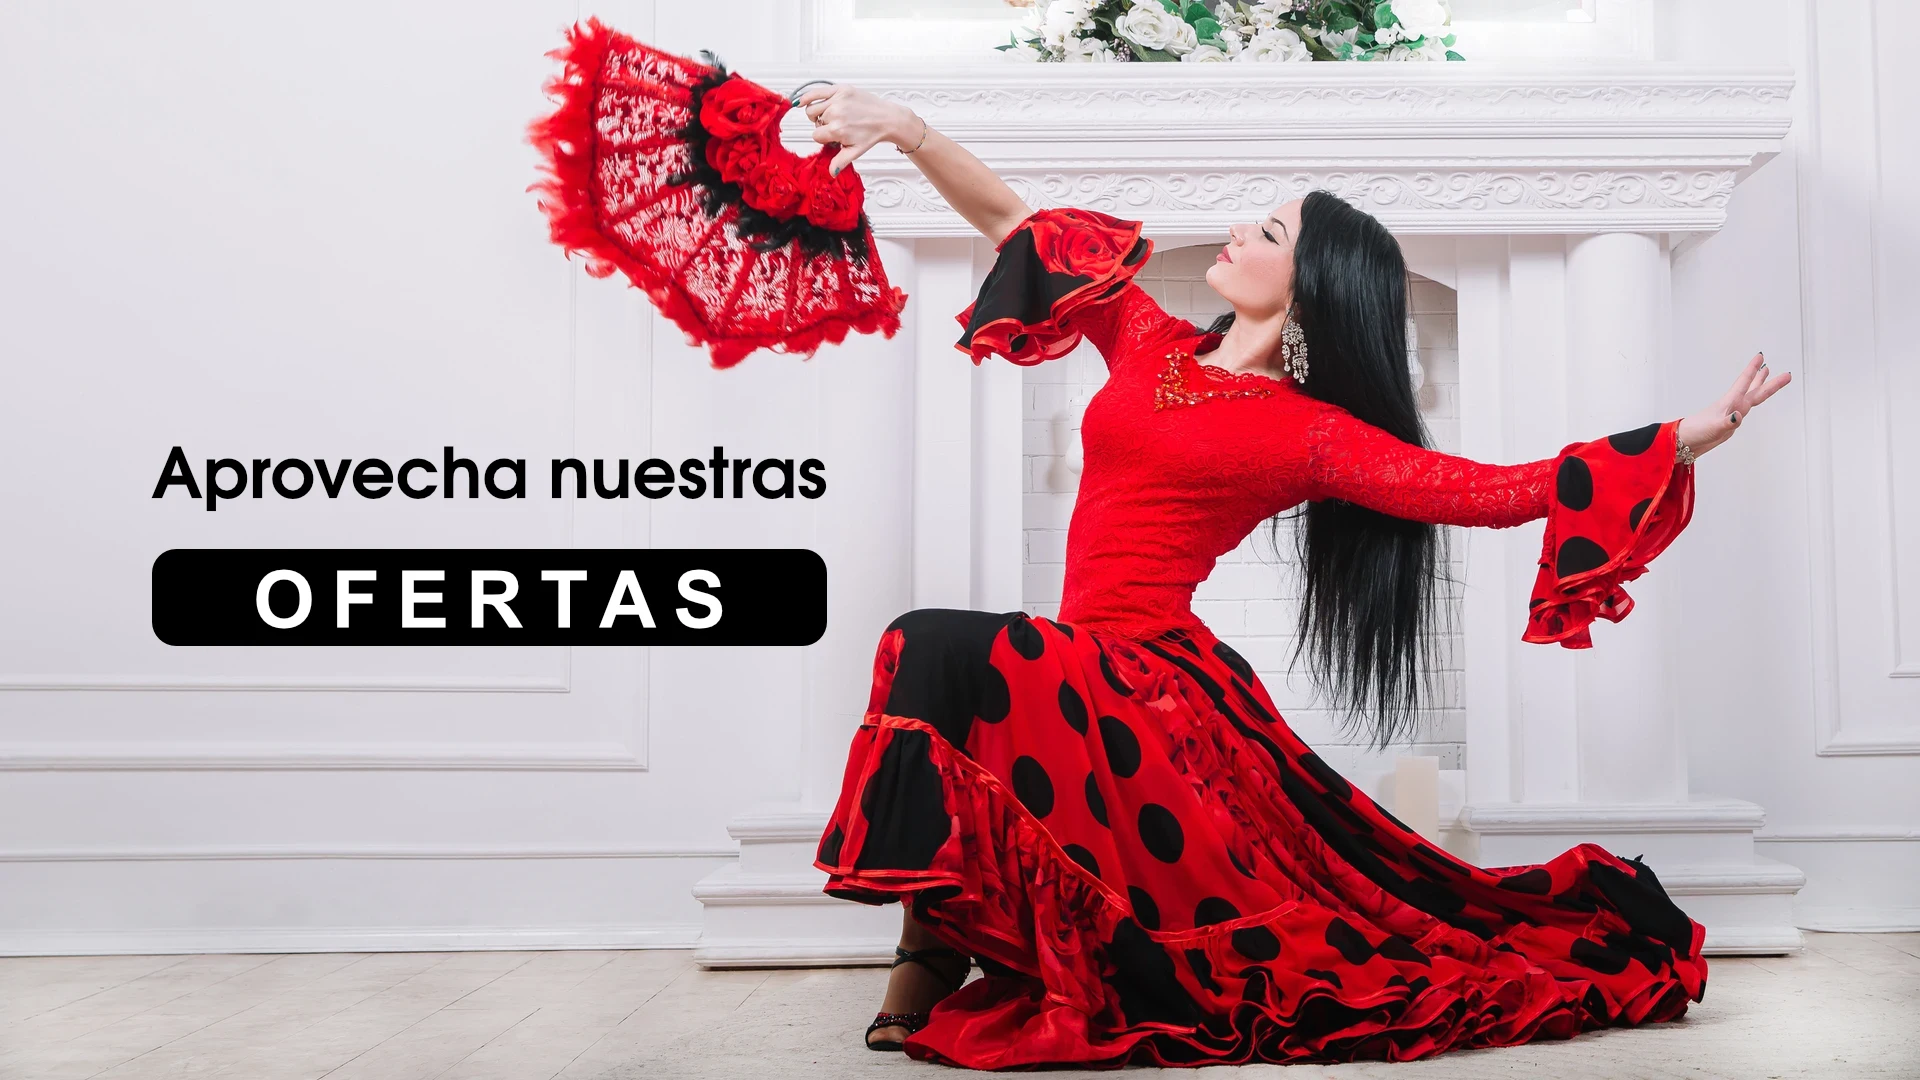 Ballet y flamenco